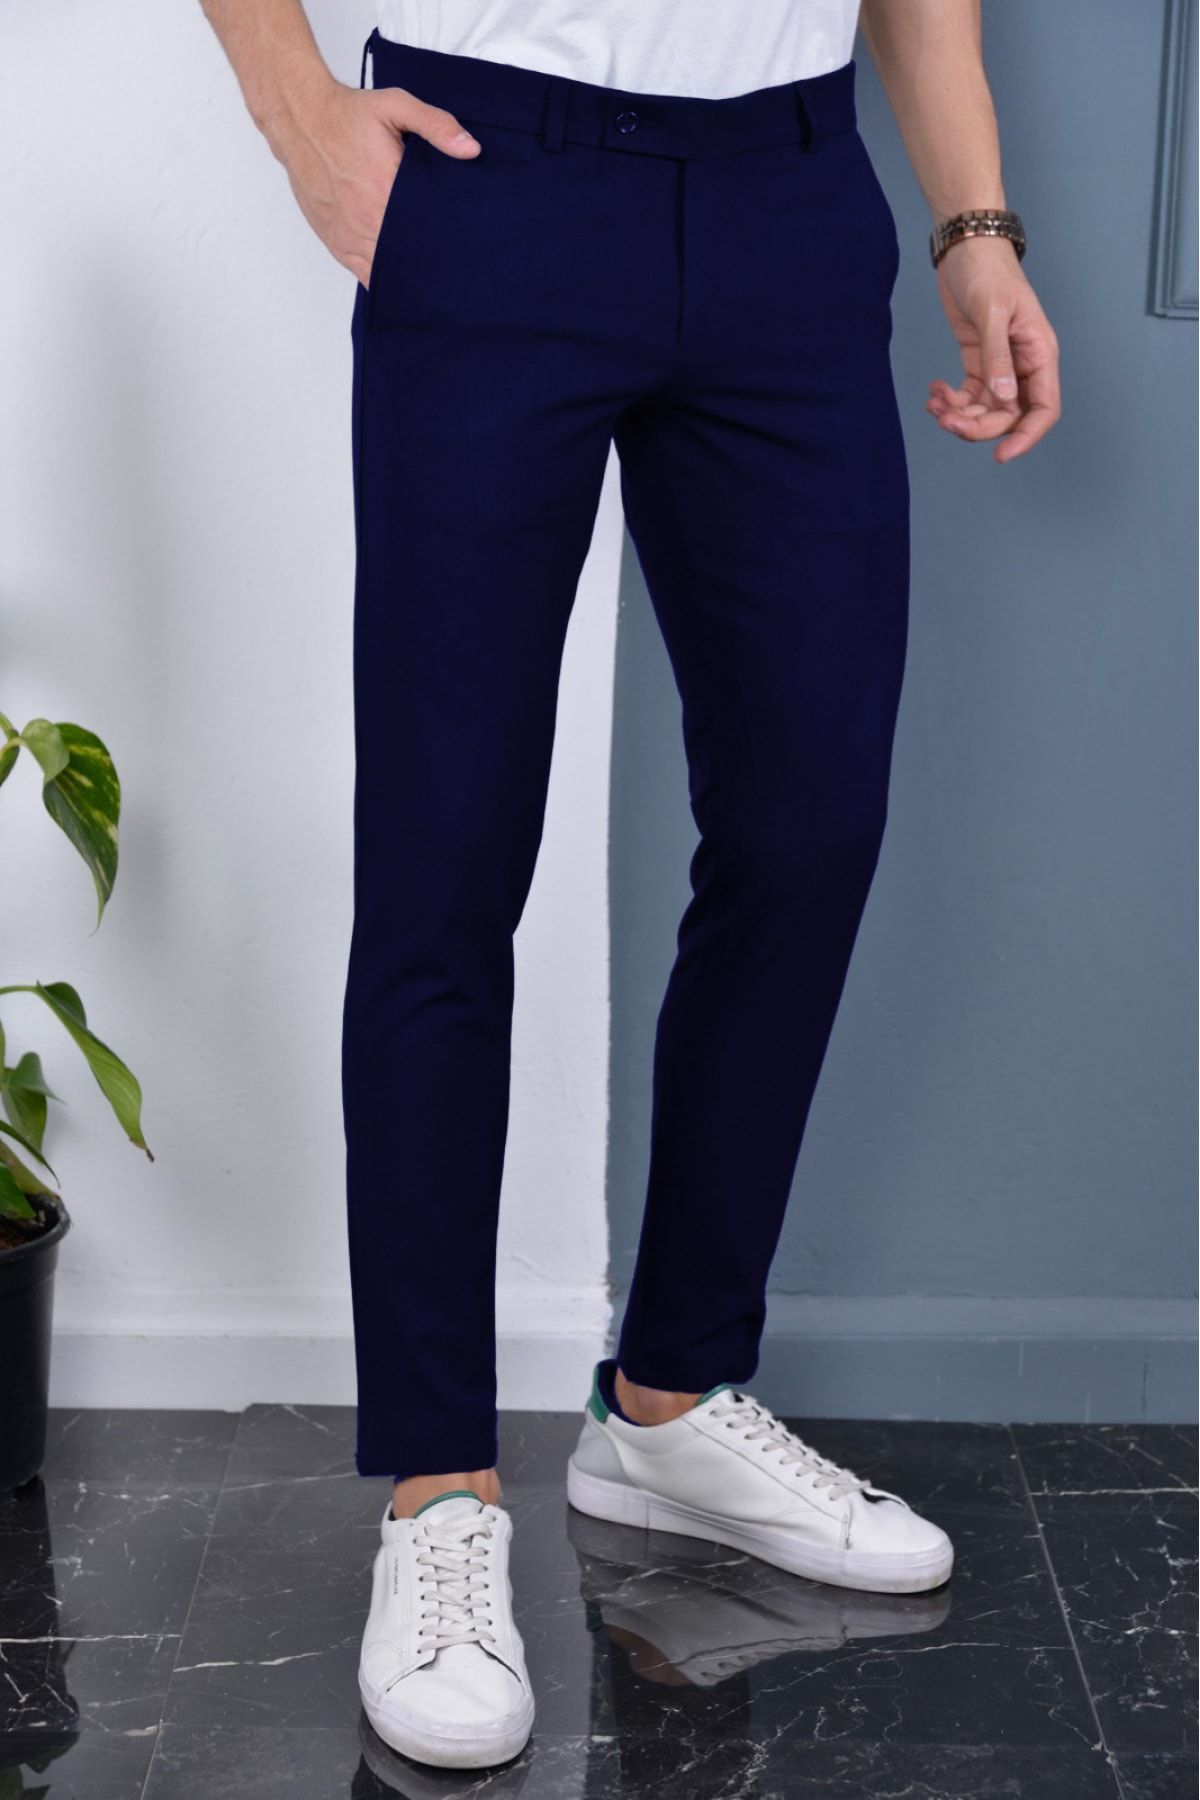 Gavazzi Erkek Lacivert Renk Italyan Kesim Kaliteli Esnek Likralı Bilek Boy Kumaş Pantolon